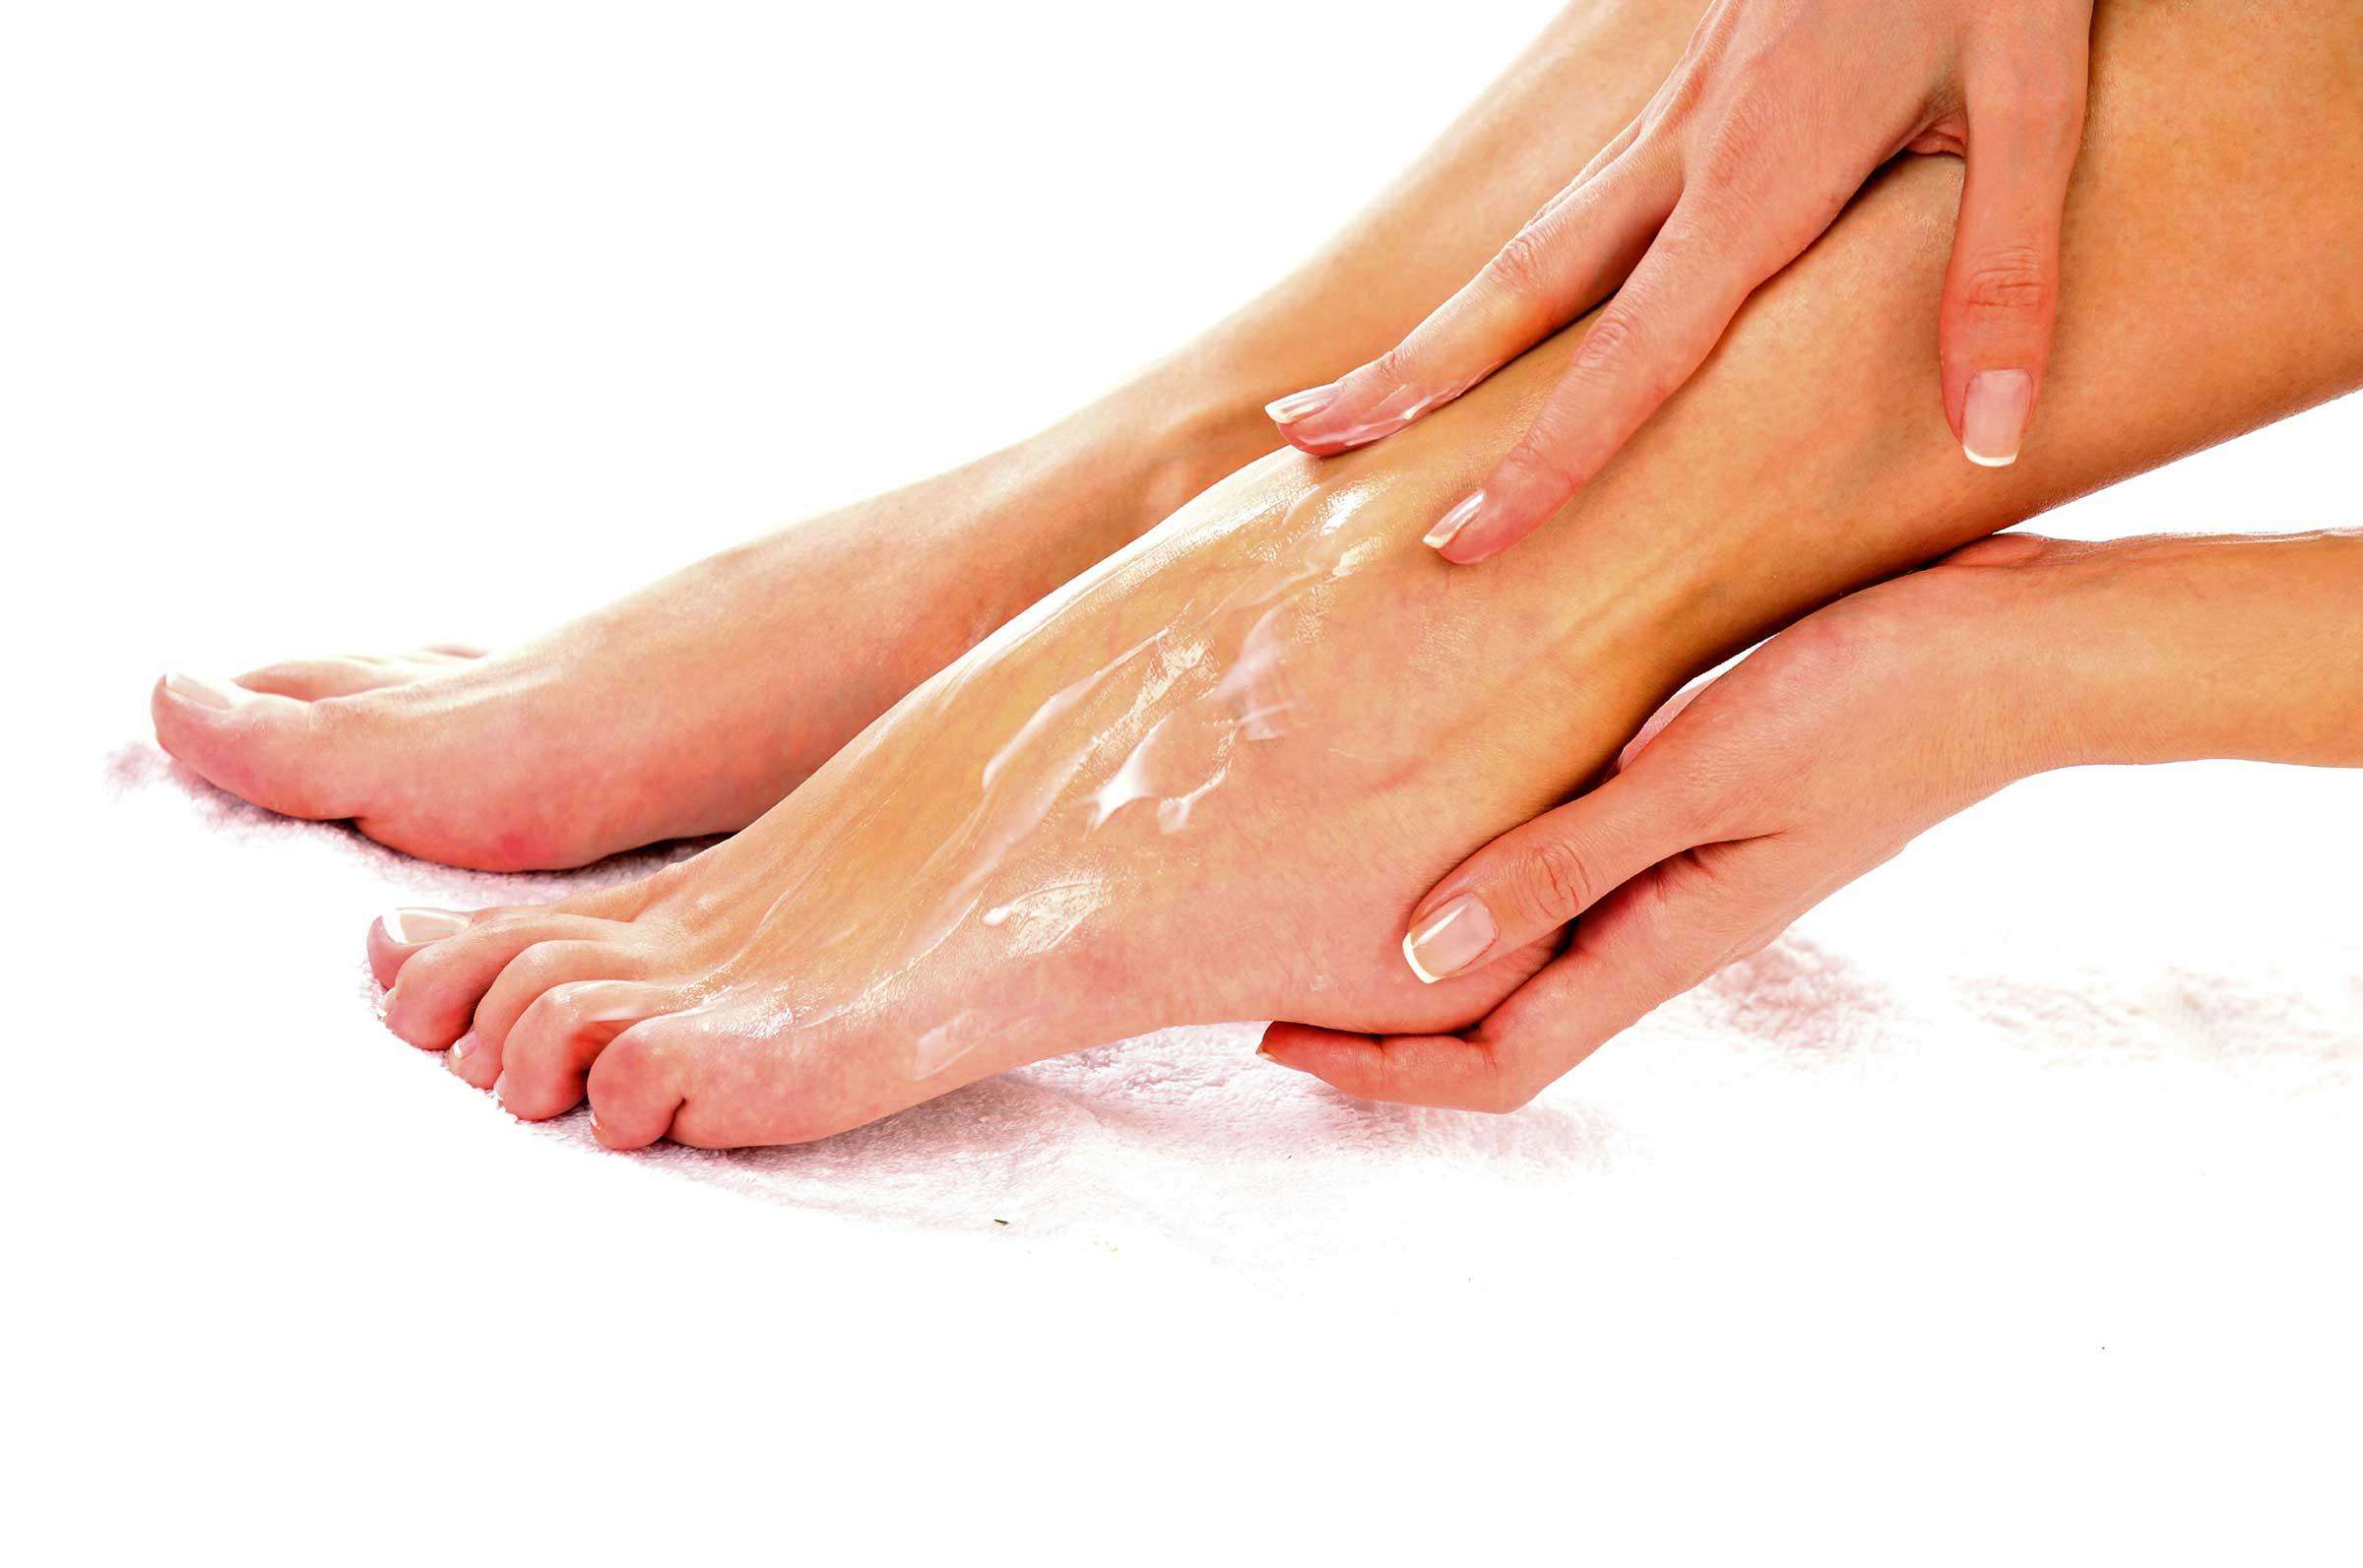 घरेलु उपायों का इस्तेमाल कर रखें पैरों की त्वचा को स्वस्थ